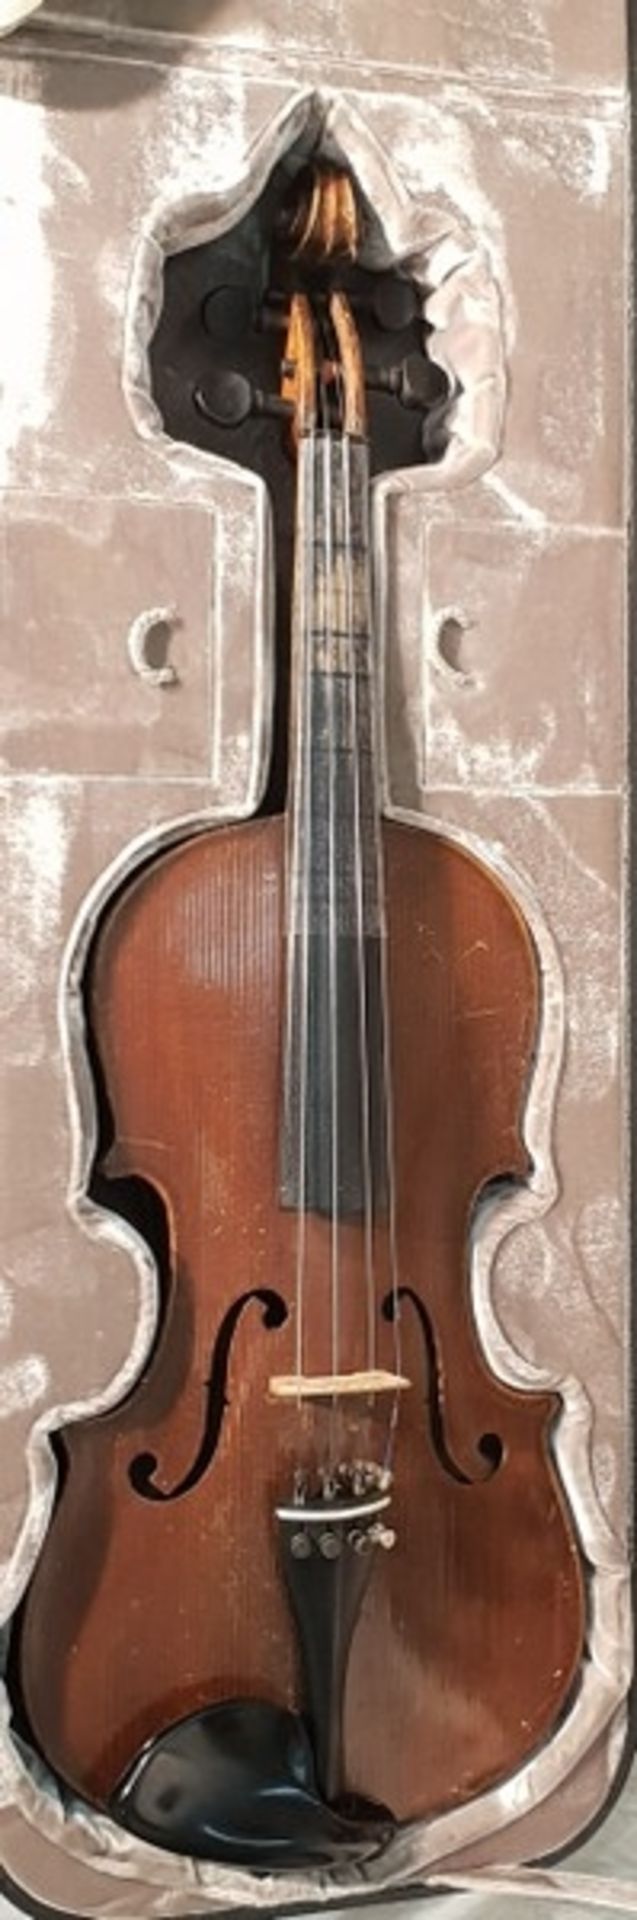 Original Jaeger Geigenkasten mit 4/4 Geige/Violine vermutlich Otto Jäger,Maße Koffer: ca.80x25cm , - Image 2 of 8